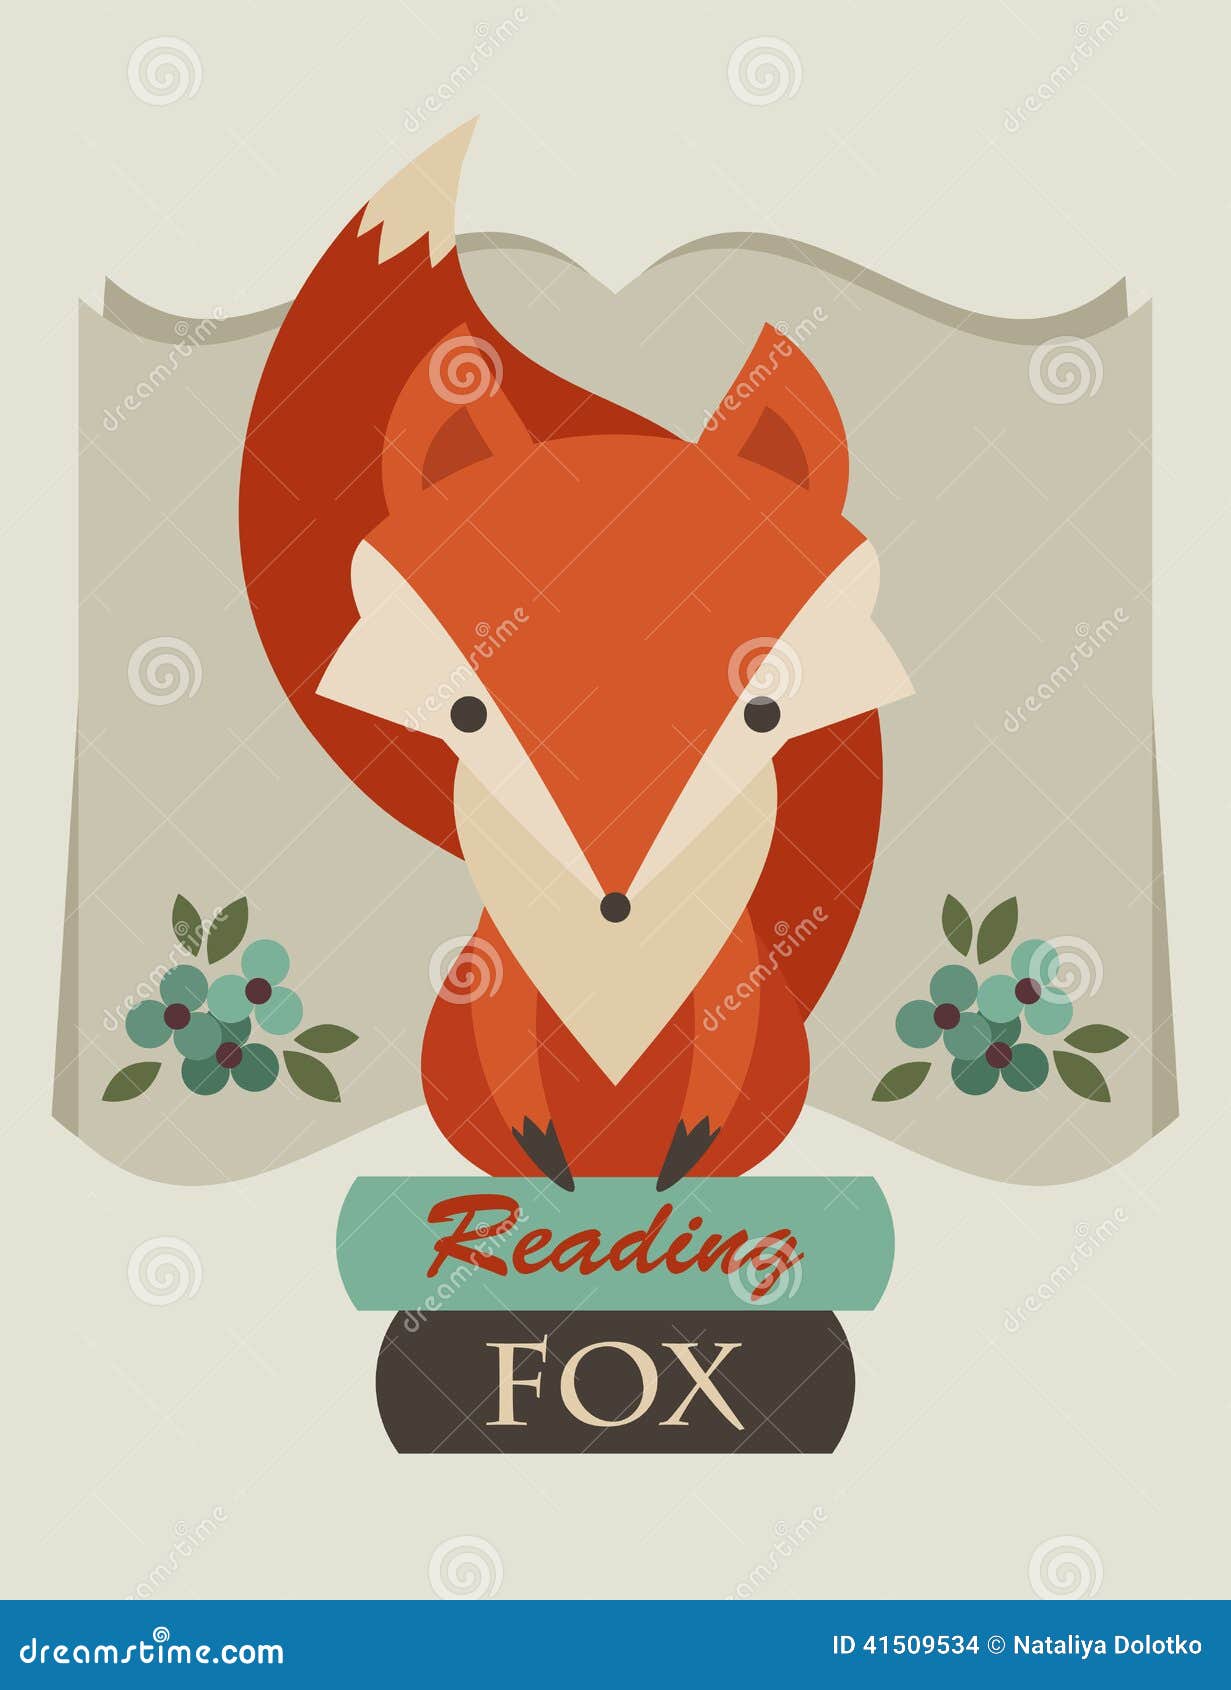 Reading fox. Лиса эмблема. Лиса с книгой вектор. Лиса сидит на книге.